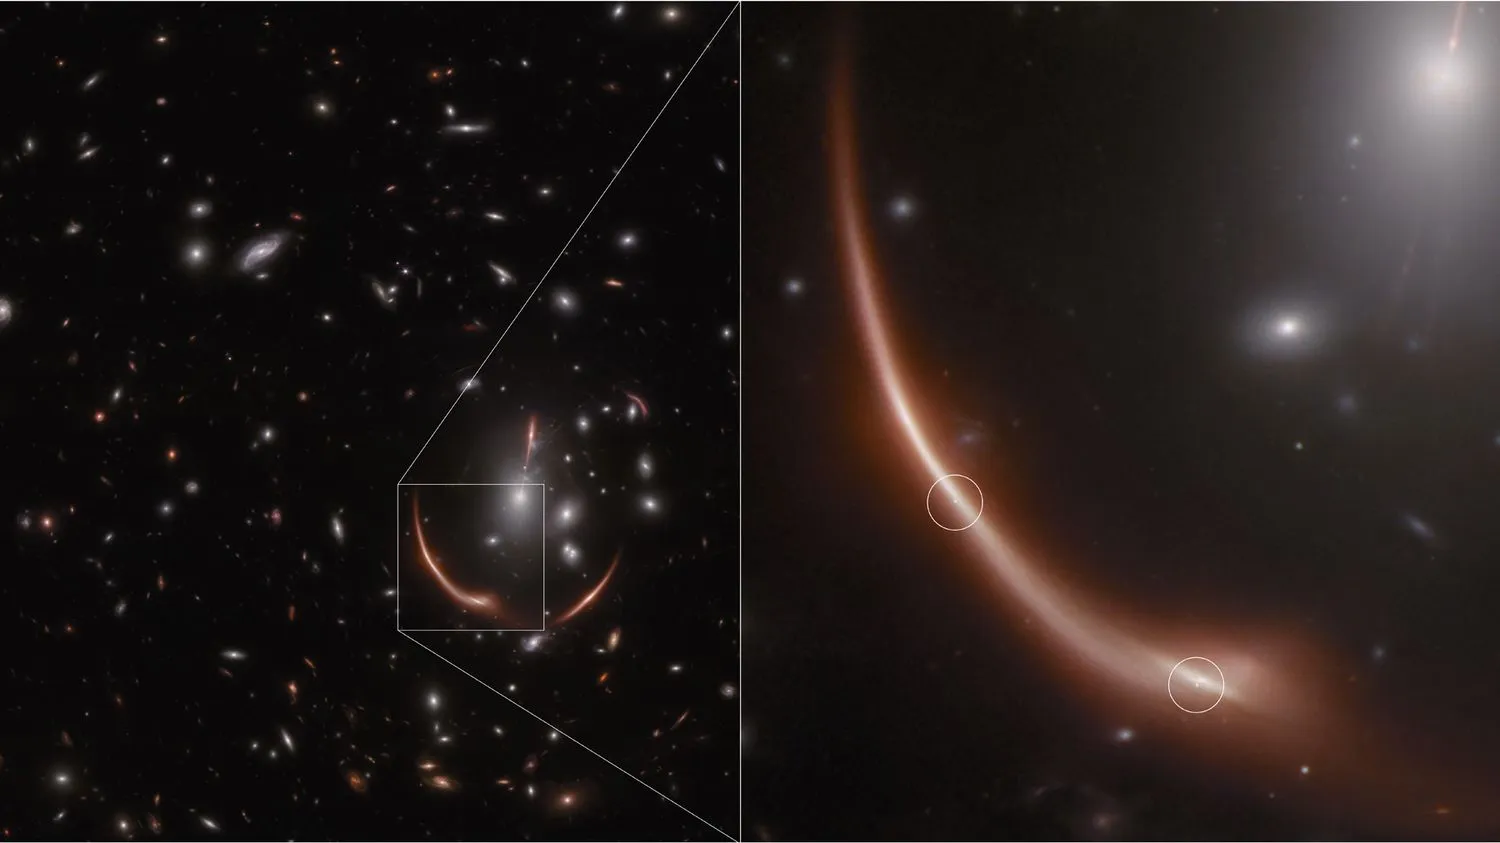 Ein verzerrter Ausschnitt des Weltraums wird vergrößert und zeigt einen rötlichen Lichtkegel mit einem hellen Stern darin.